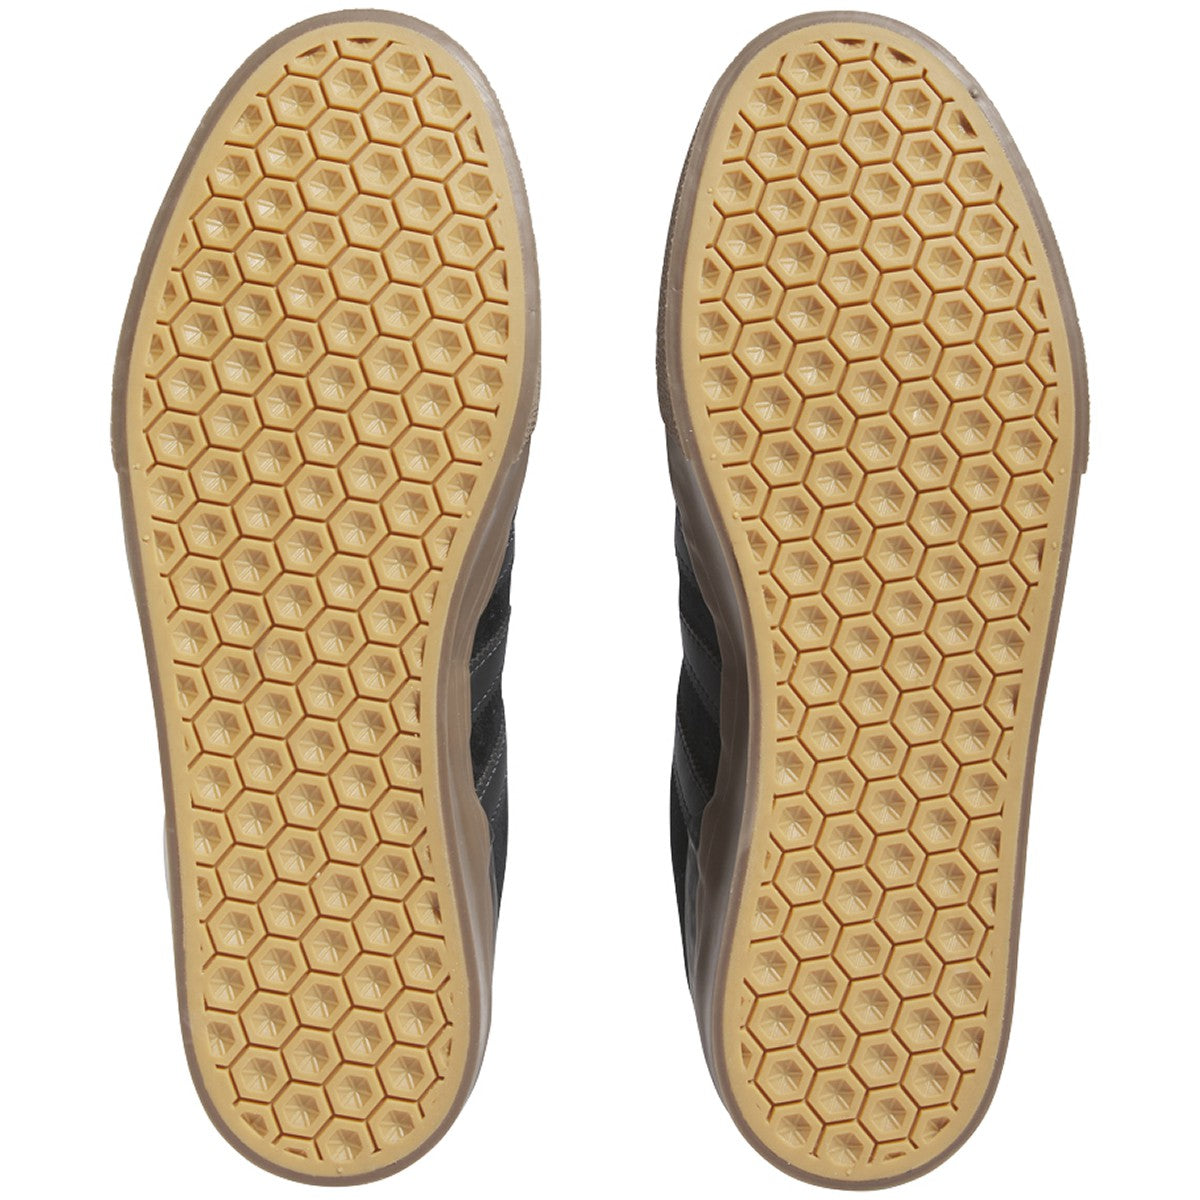 Core Black/Gum Busenitz Vulc II Adidas Skate Shoe Bottom